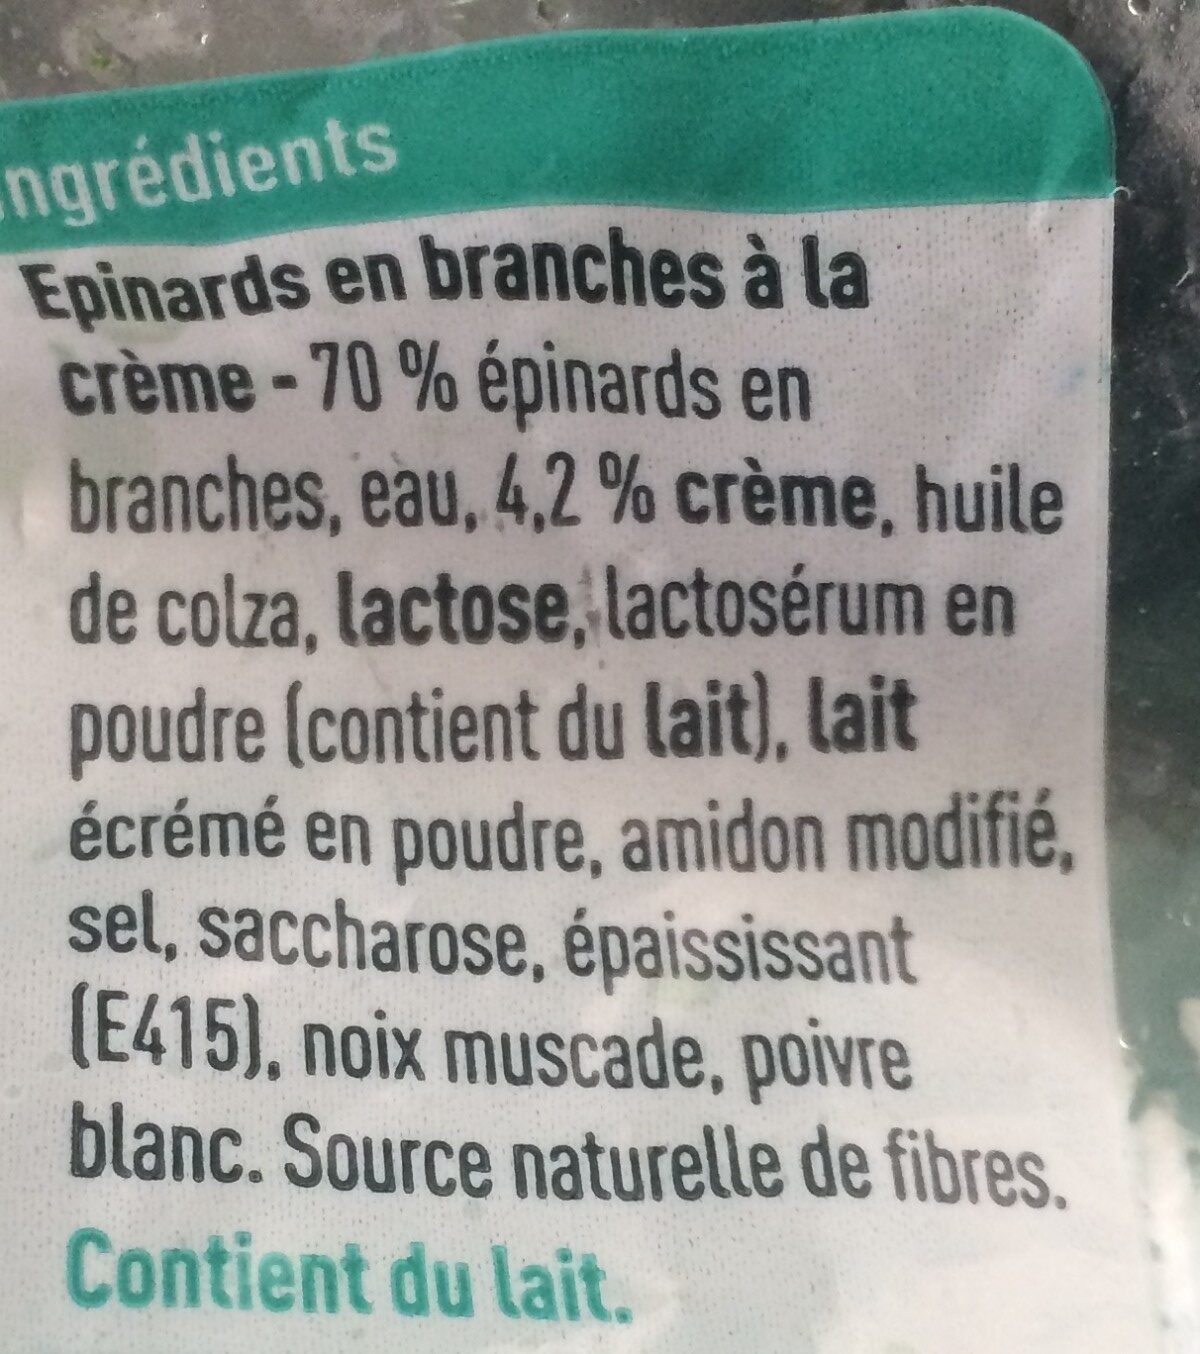 Epinards en branche a la creme - Ingrediënten - fr